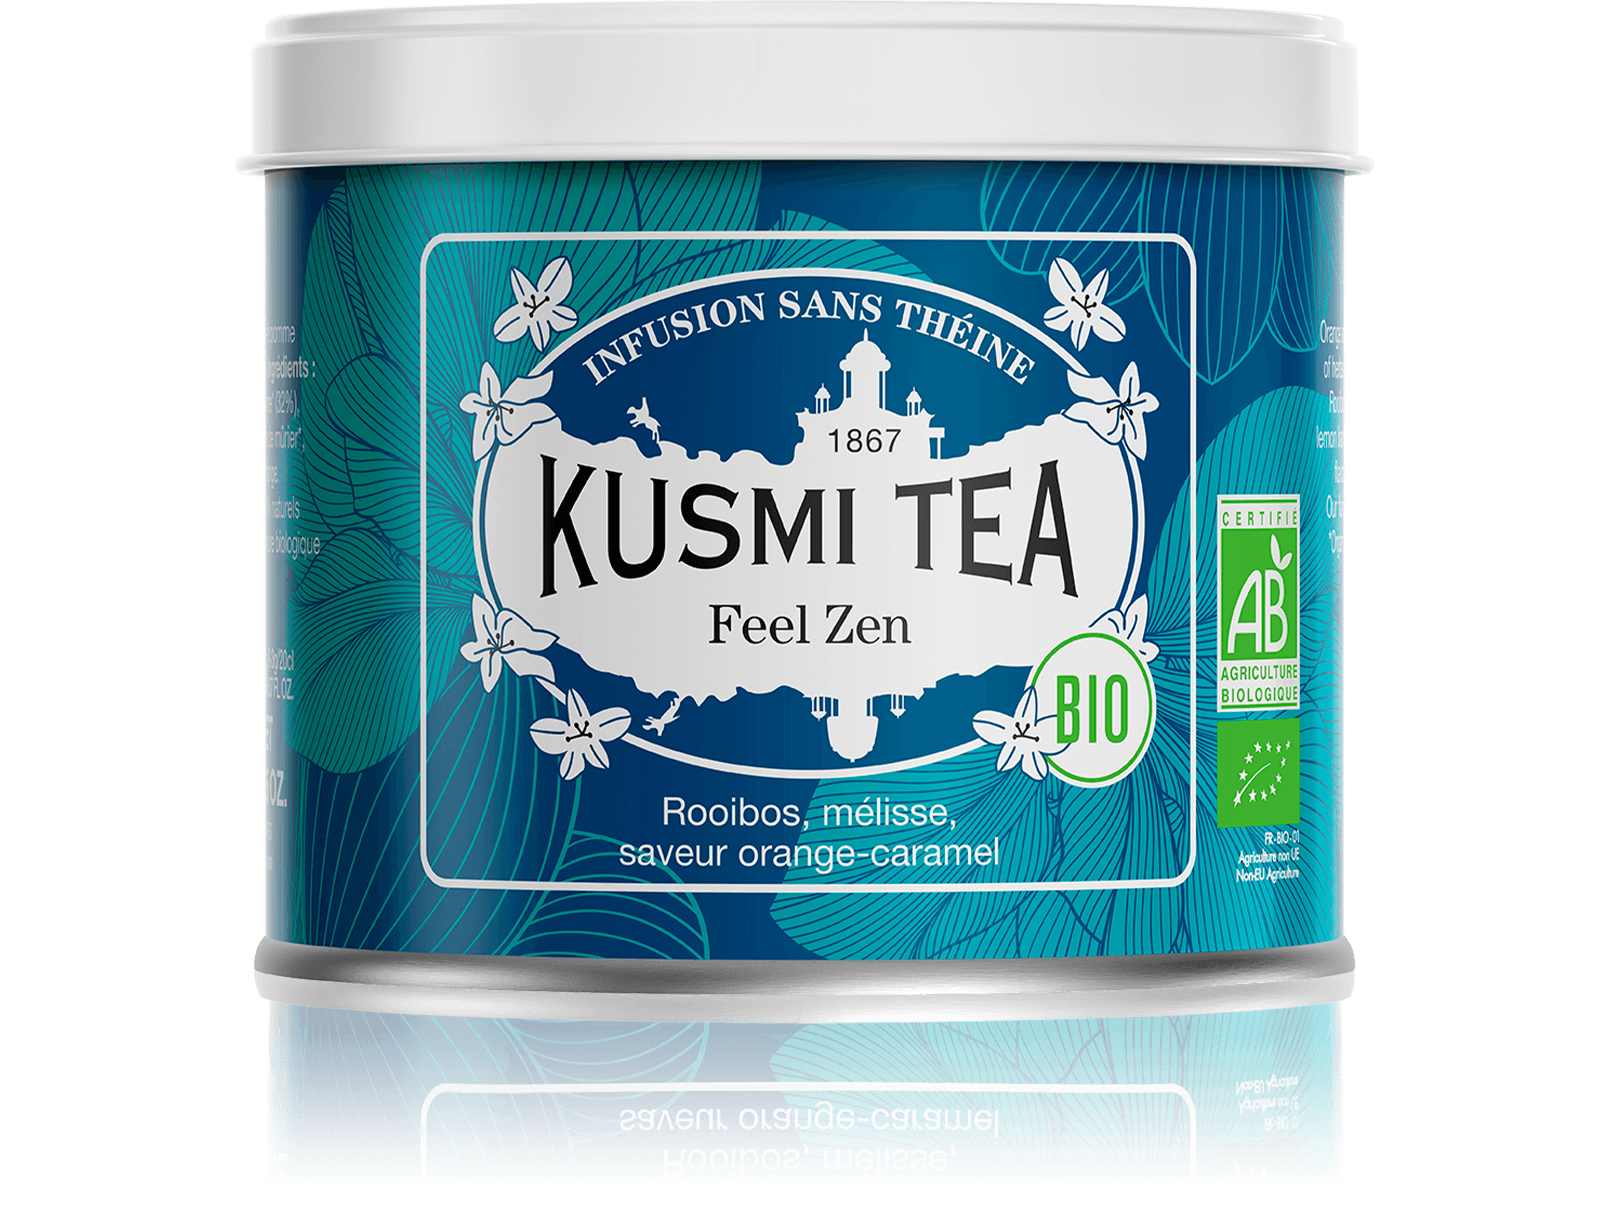 Almond Rooibos (Organic herbal tea) - Kusmi Tea